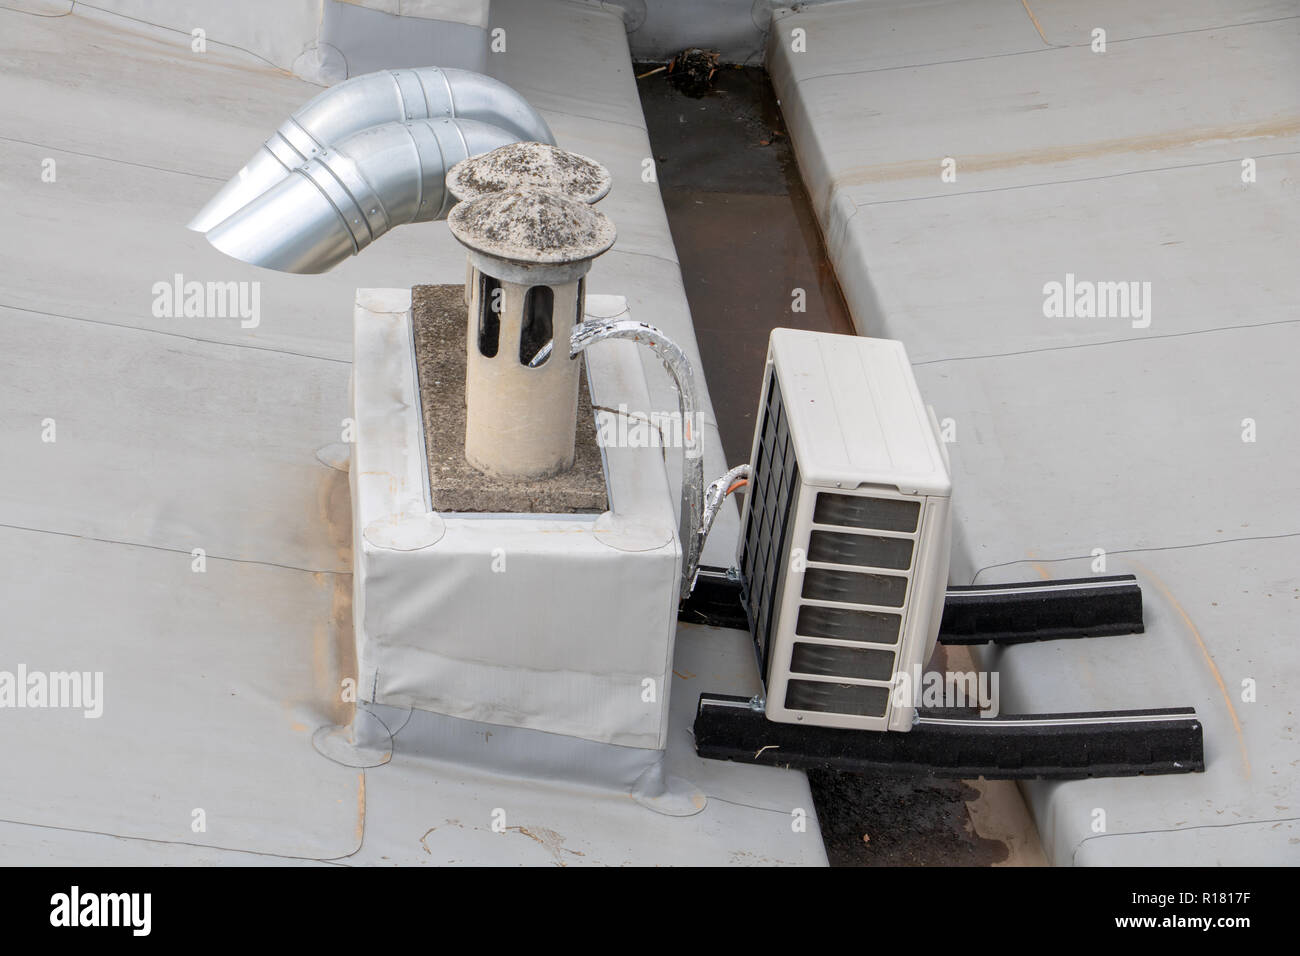 Lufteinlass-oder Klimaanlagen-Rohr Stockbild - Bild von haus, infektion:  97272757